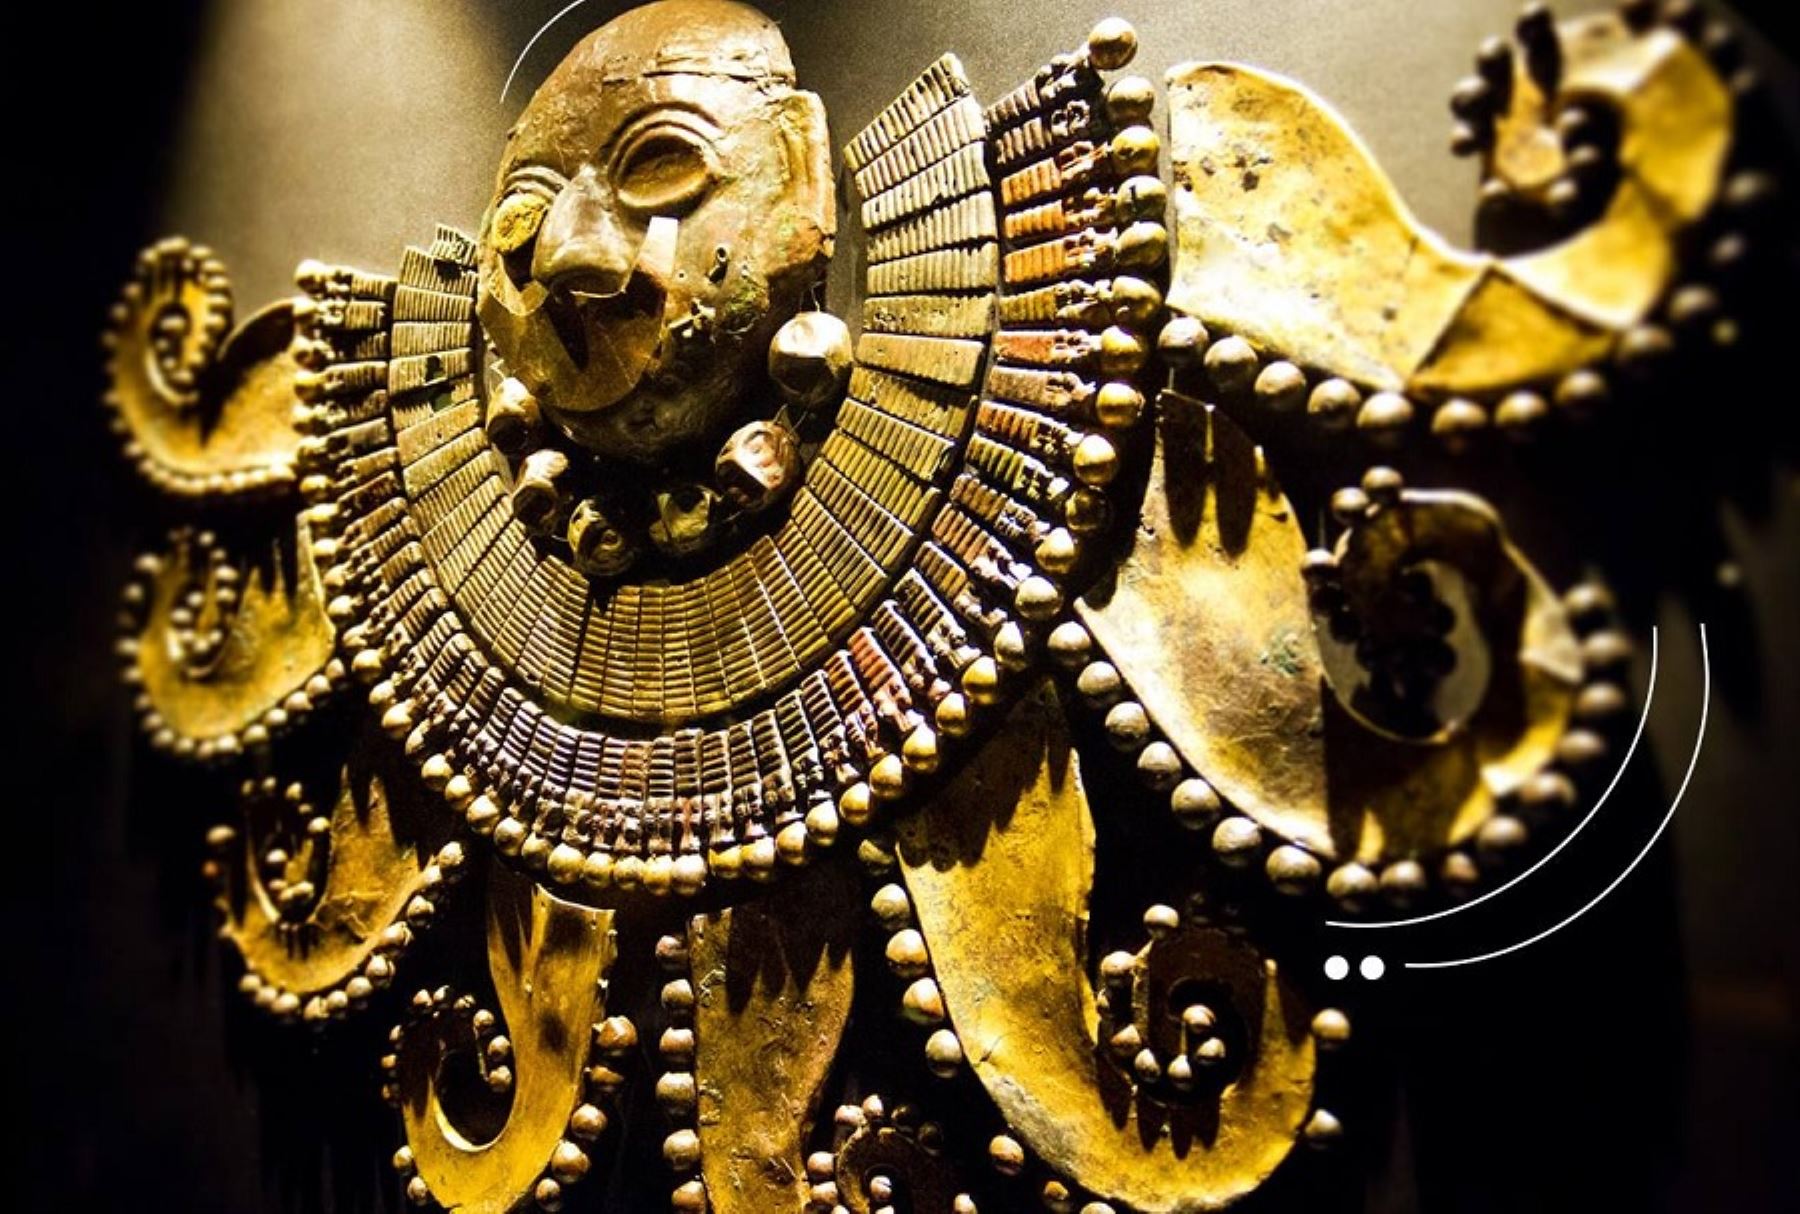 El museo Tumbas Reales de Sipán celebrará, el próximo 8 de noviembre, su XX aniversario de inauguración, consolidado como el recinto cultural más importante del norte peruano y uno de los diez mejores museos de Sudamérica.